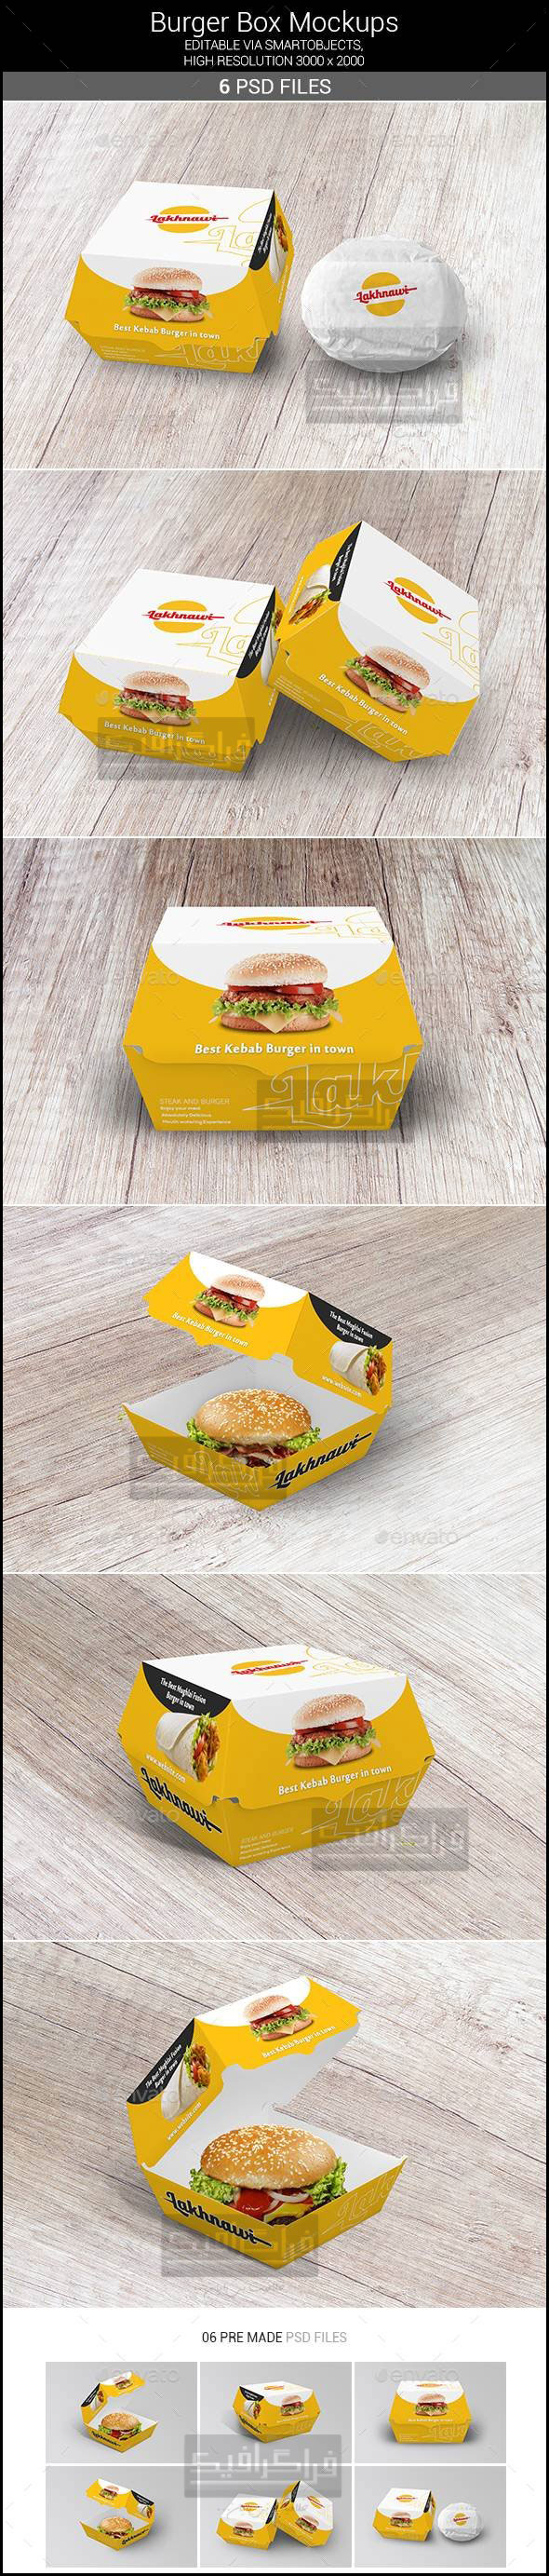 دانلود مجموعه ماک آپ فتوشاپ جعبه همبرگر